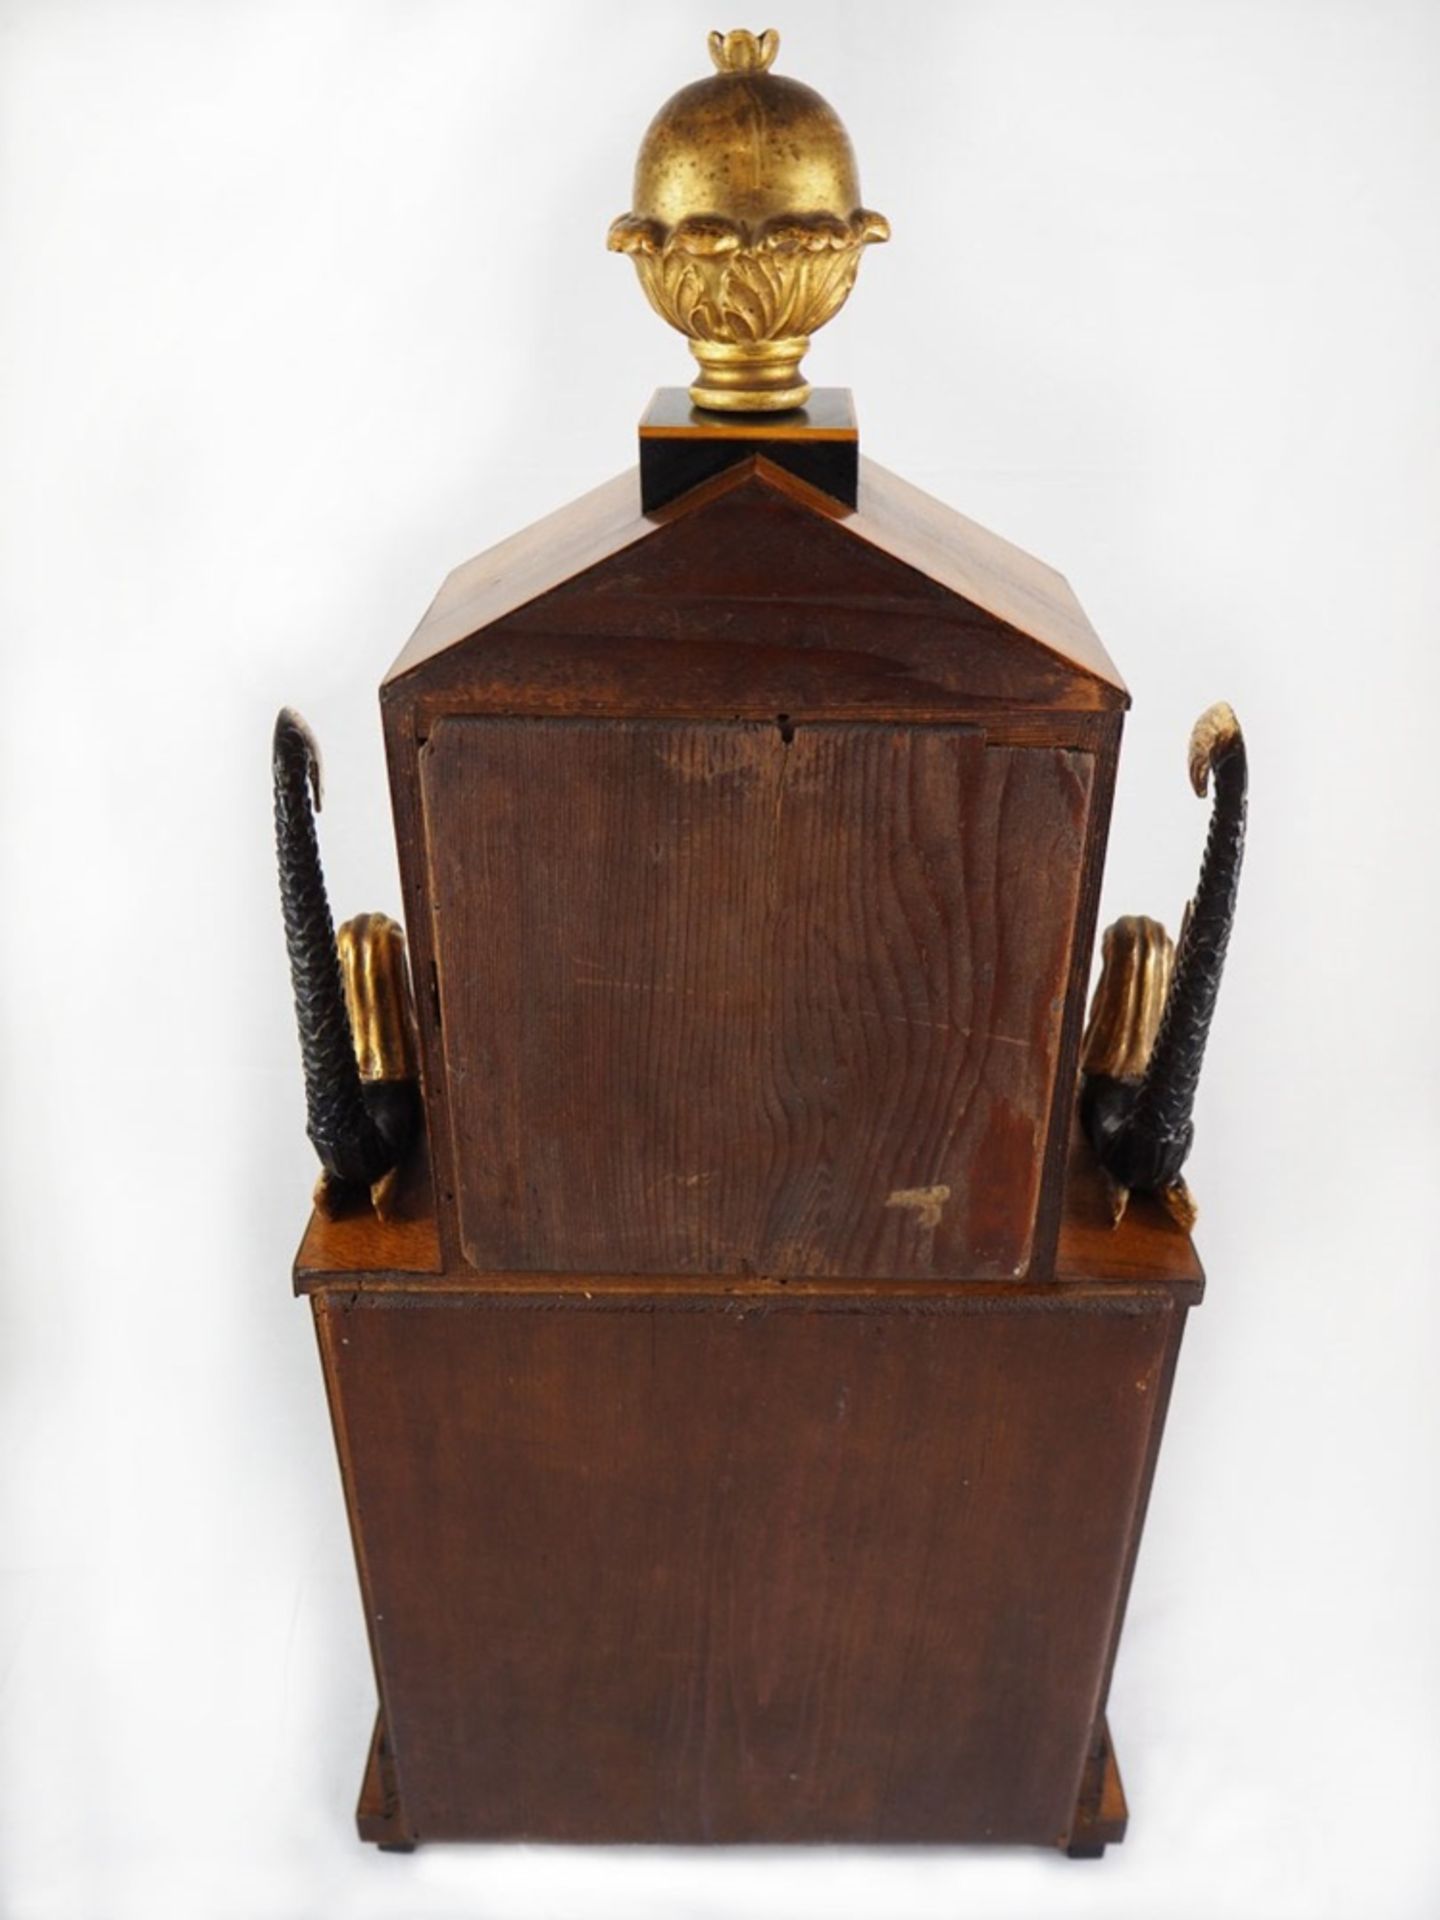 Klassizistische Portaluhr - Hausherrenuhr um 1800.Hochwertige große Stockuhr/Kaminuhr im - Bild 6 aus 18